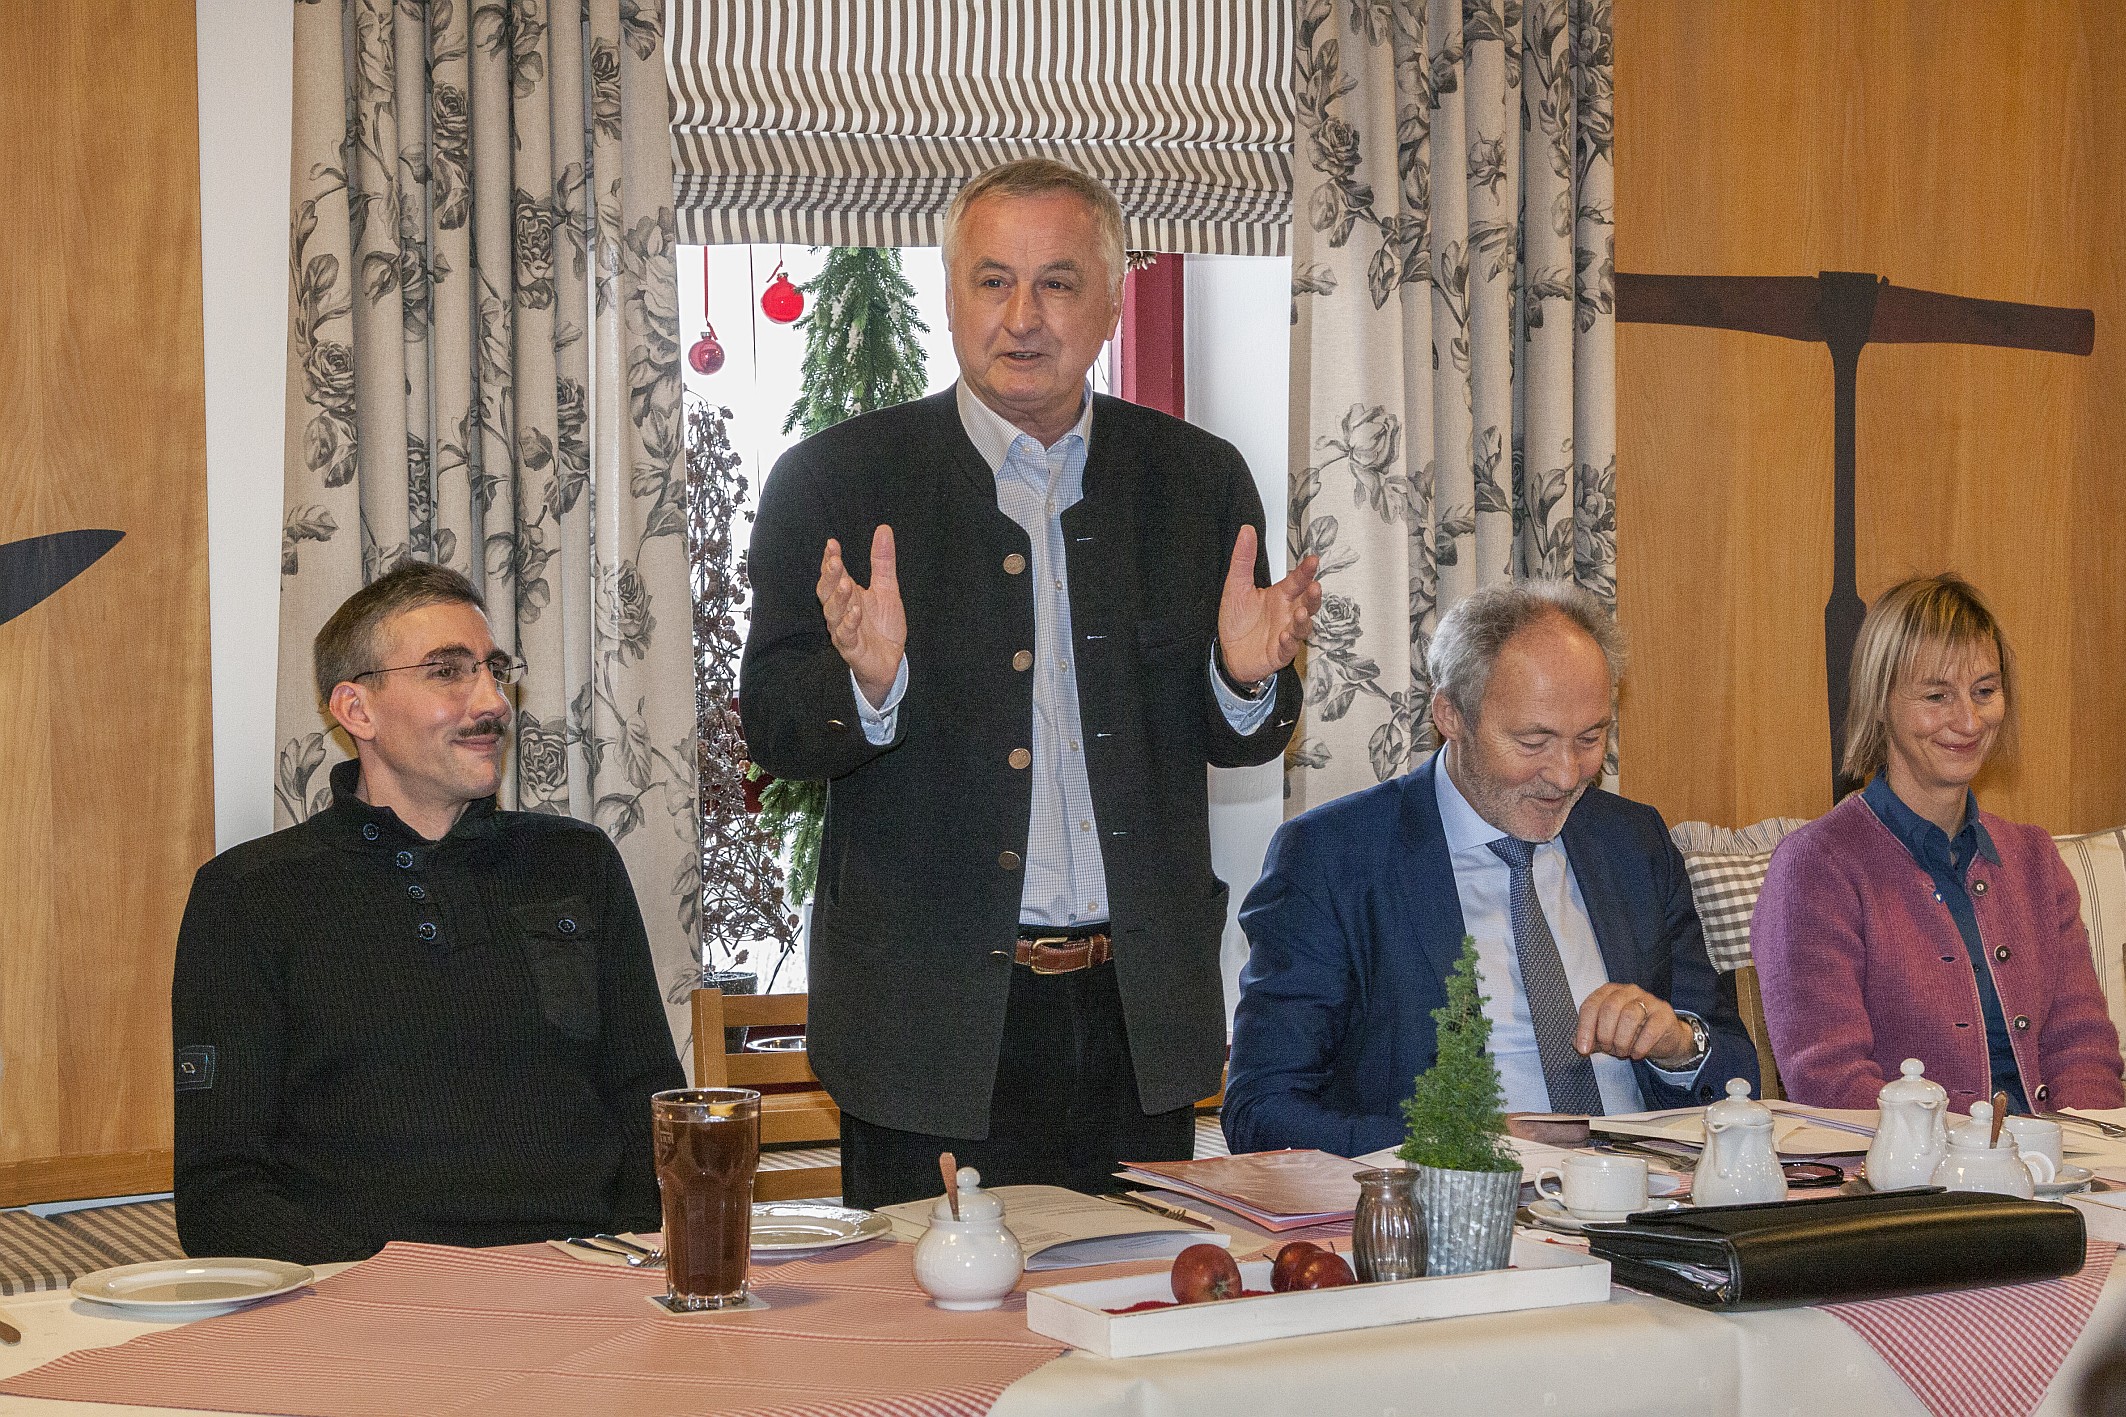 Mit Freude verkündete Bezirkstagspräsident Jürgen Reichert gemeinsam mit Landwirt Anton Gregg (links), Landrat Hans-Jaochim Weirather und Simone Zehnpfennig-Wörle den Abschluss der erfolgreichen Grundstücksverhandlungen.